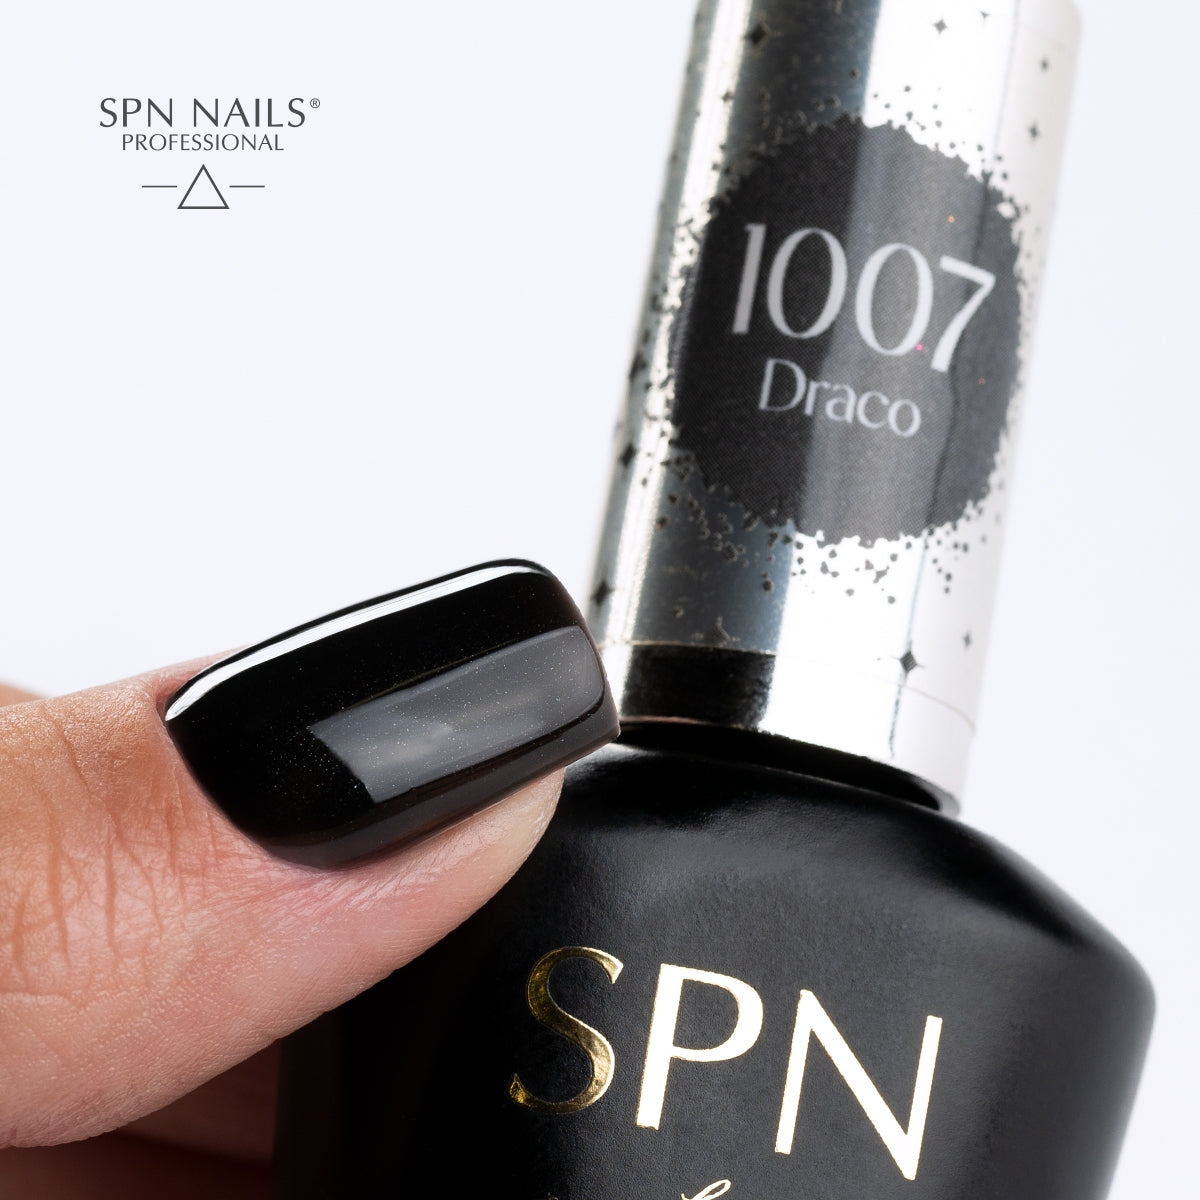 SPN Nails UV/LED Gel Polish 1007 Draco Black Nail Swatch